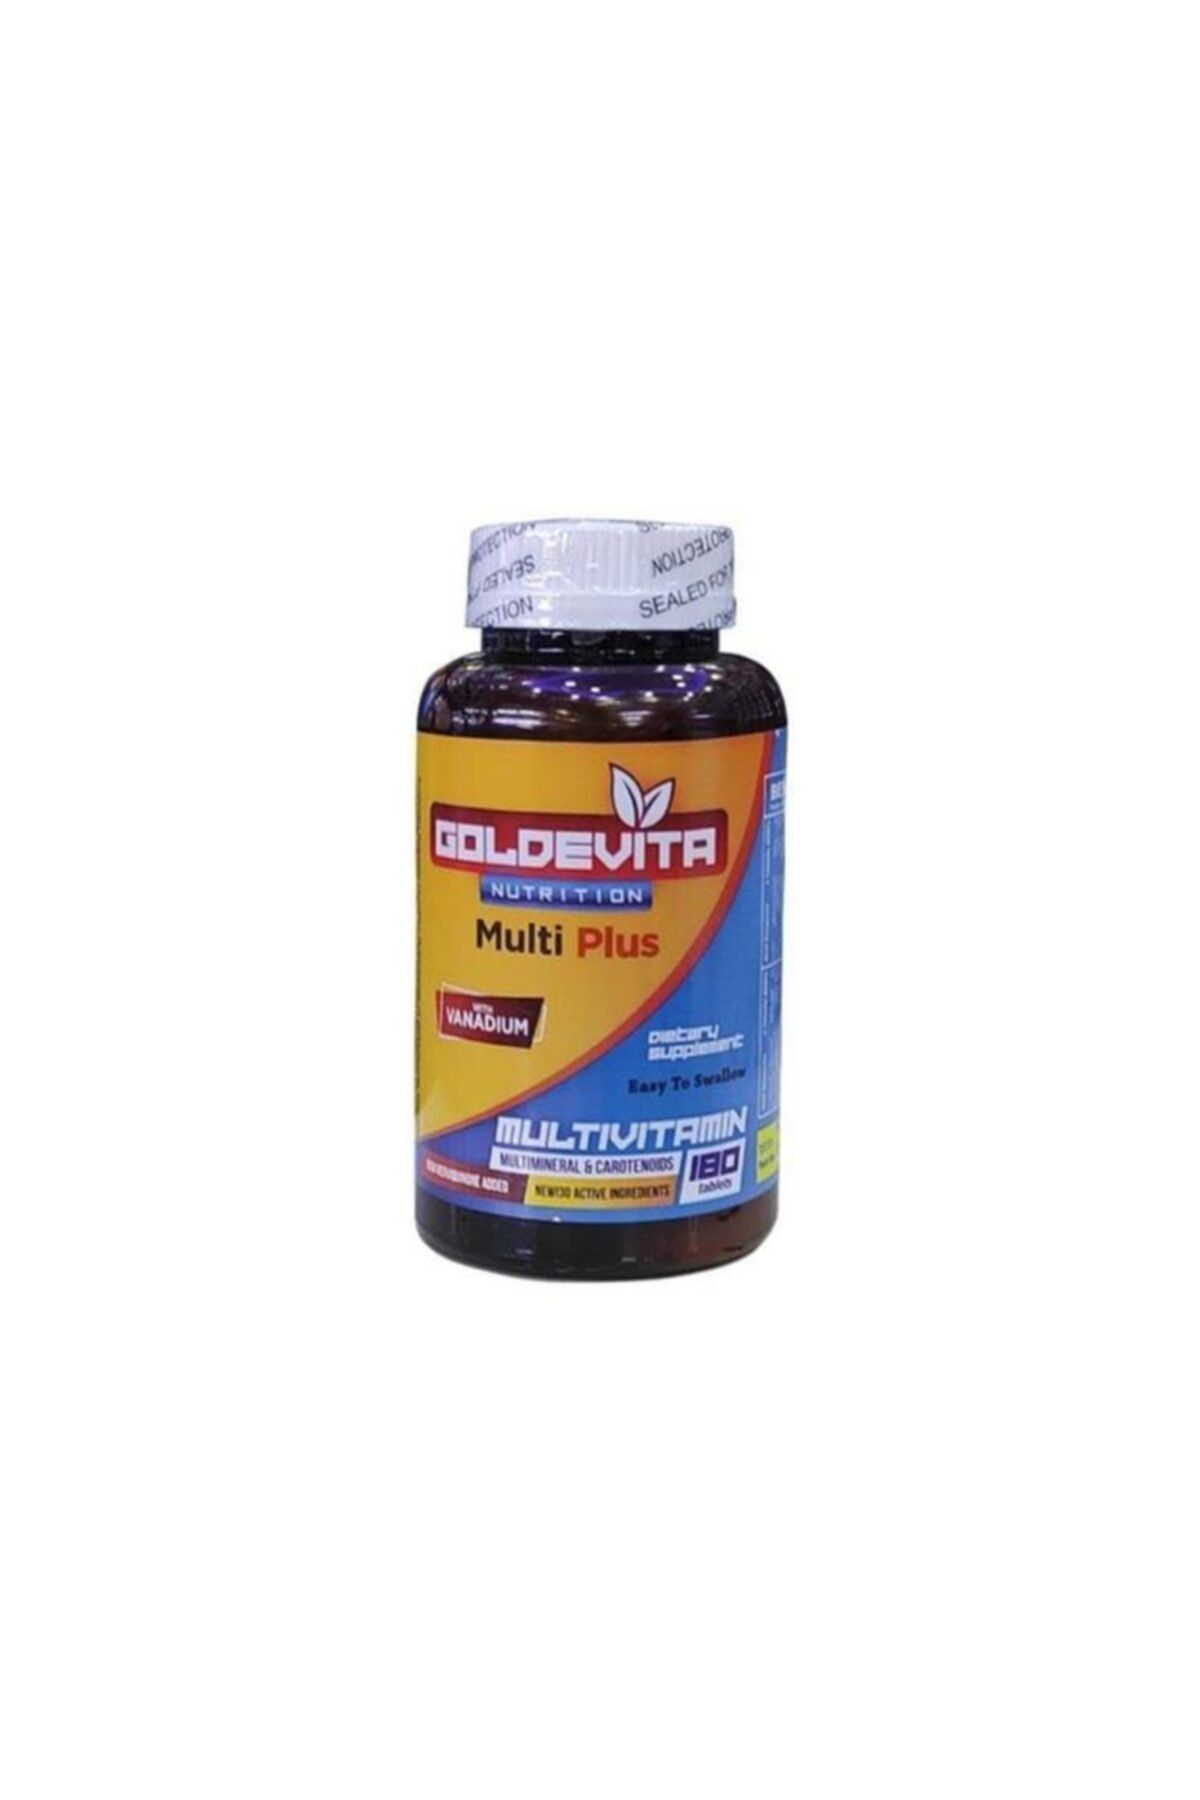 GoldeVita Nutrition Multivitamin 180 Tablet